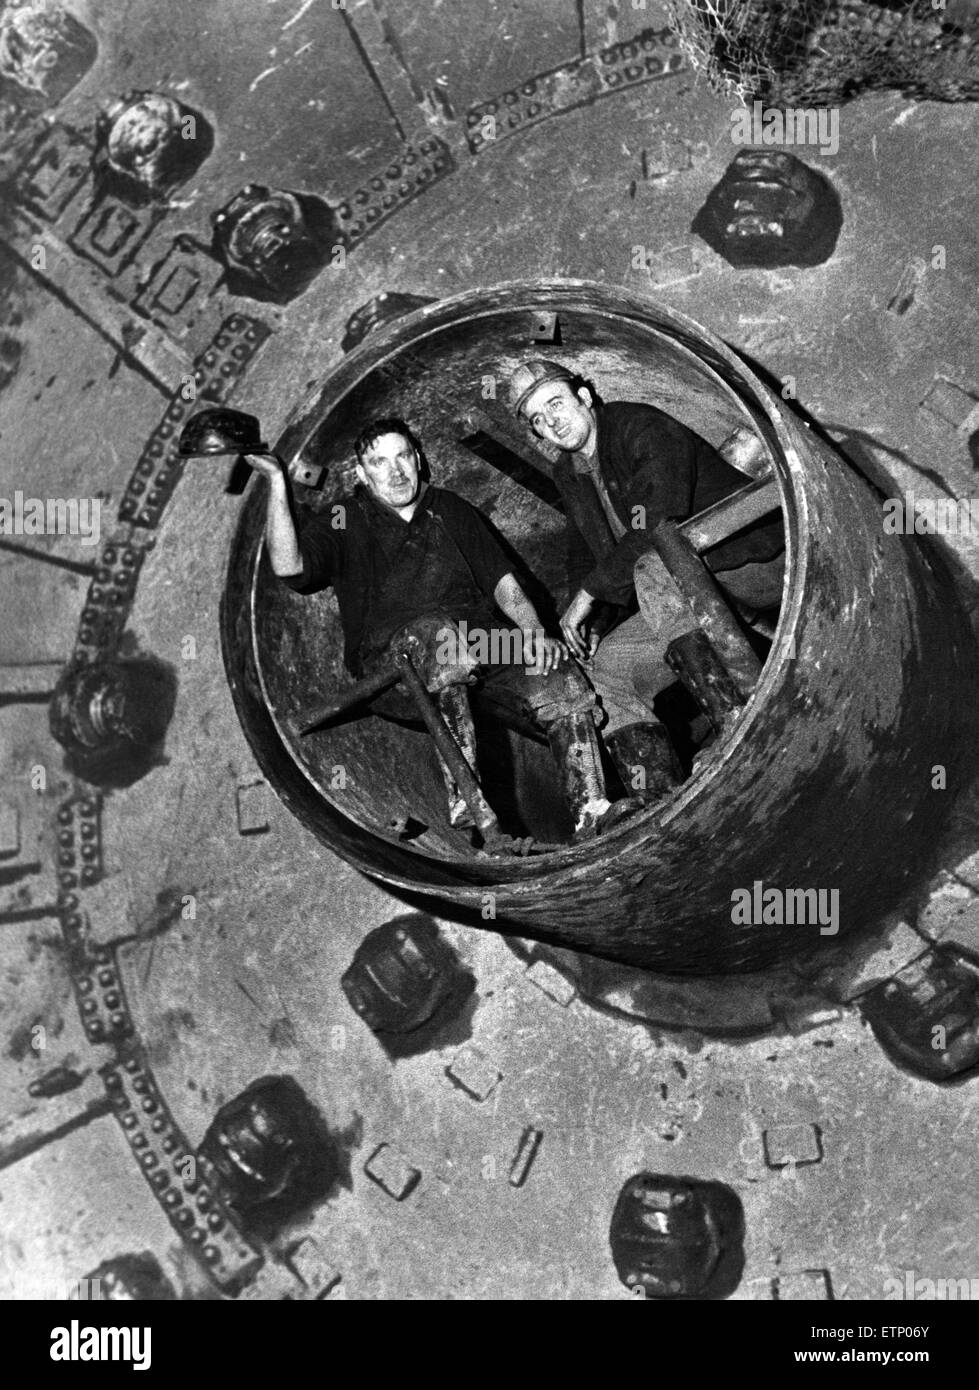 Les hommes qui ont fait l'assaut final - pilote Danny Williams (à gauche) et le patron de loi Joblin. Deuxième tunnel percée. Le Kingsway Tunnel est un tunnel routier sous la rivière Mersey dans le Merseyside et est souvent appelé le Wallasey tunnel. 5e mars 1970. Banque D'Images